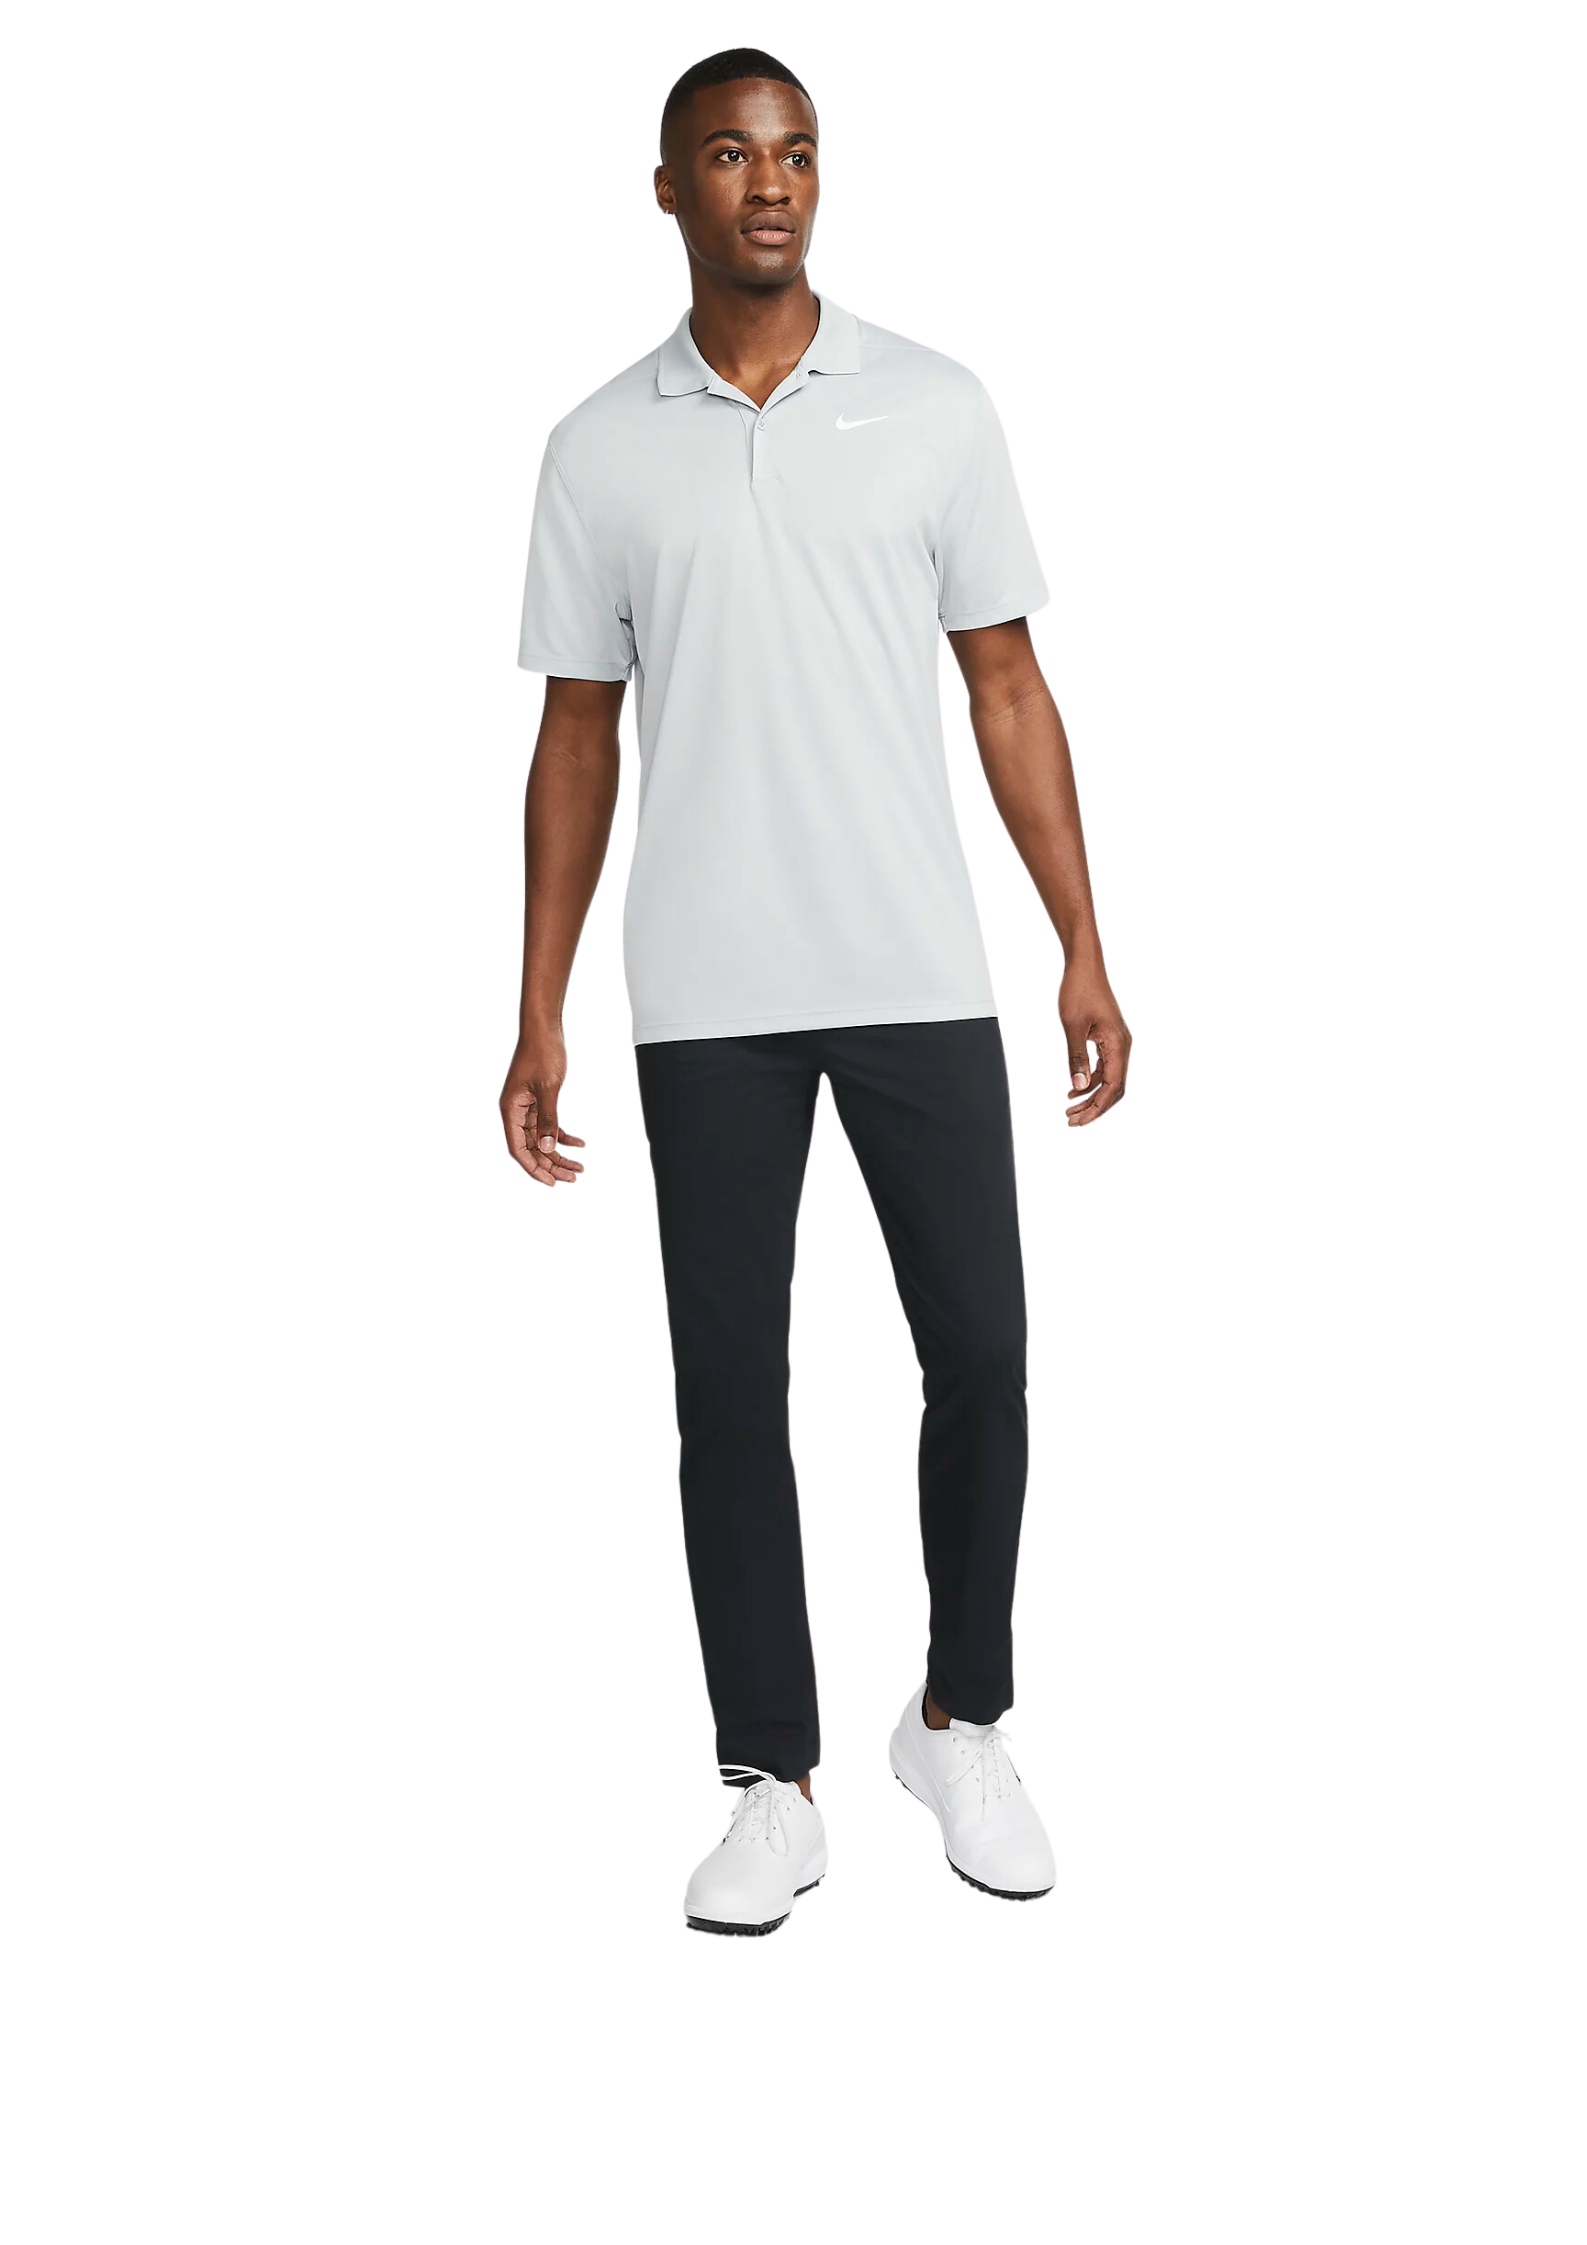 Nike | DH0822-077 | Dri-FIT Victory Men's Golf Polo | Smoke Grey / White